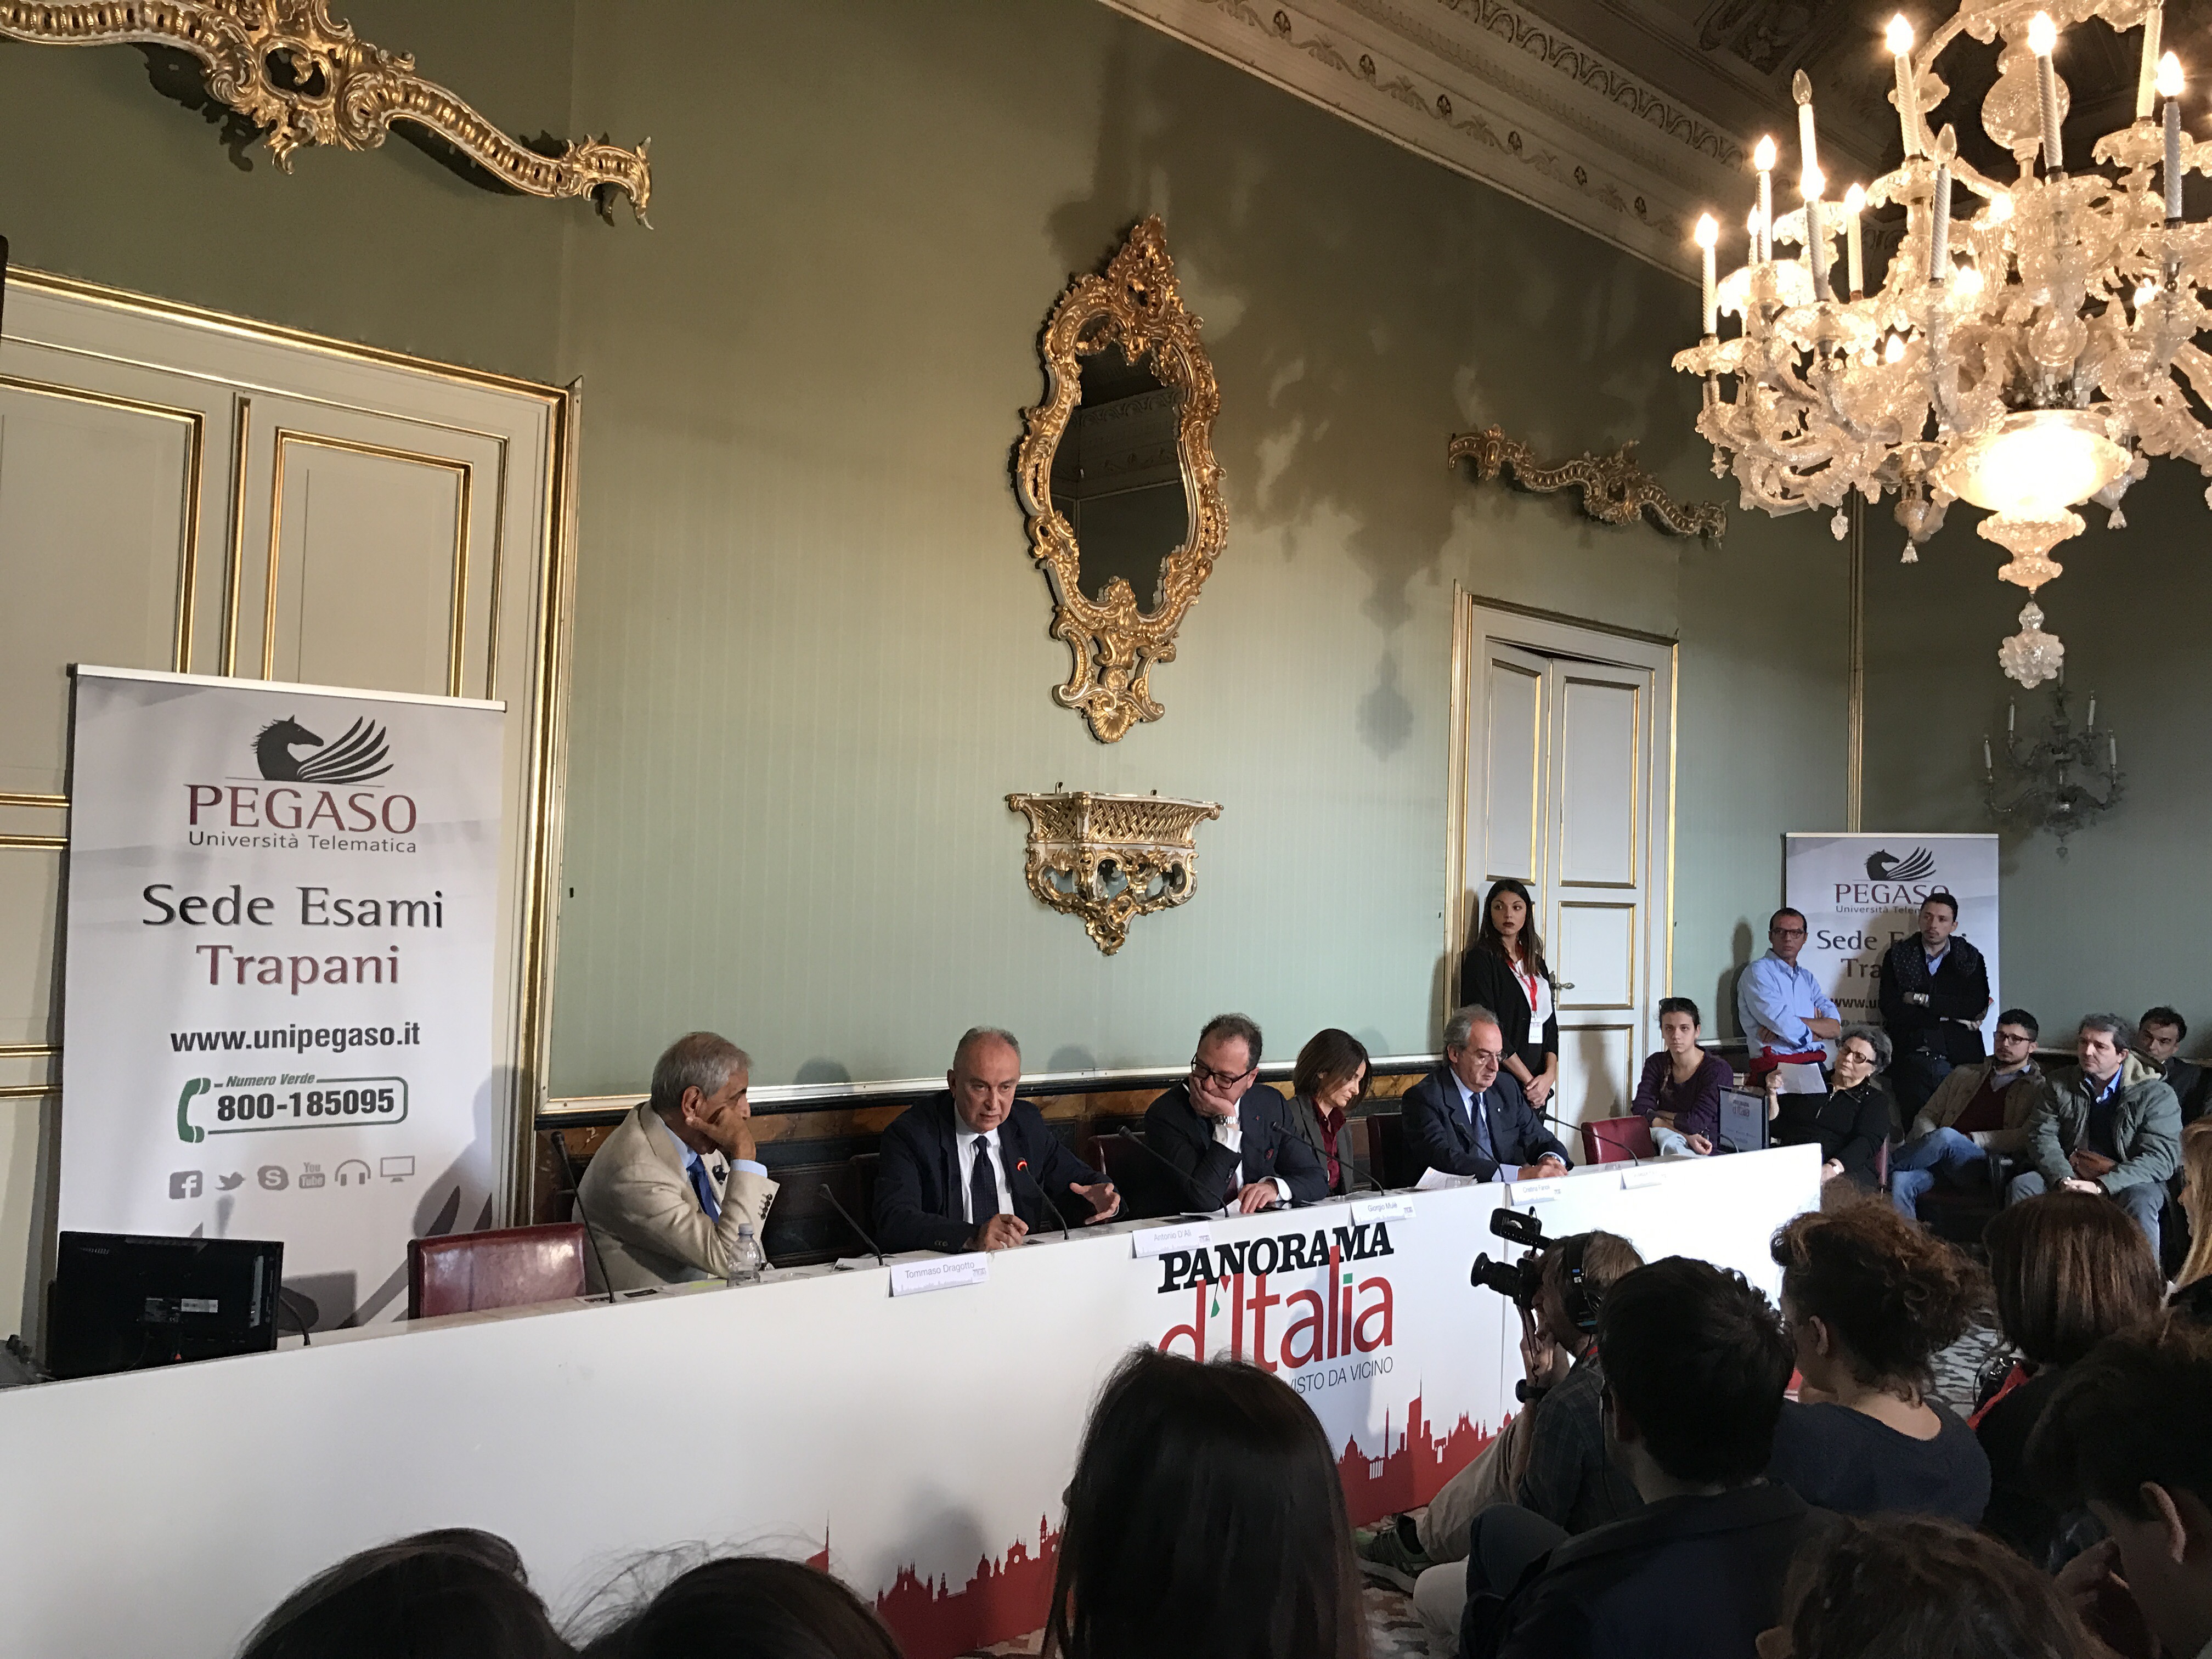 Panel I: "L'Italia riparte da Trapani 